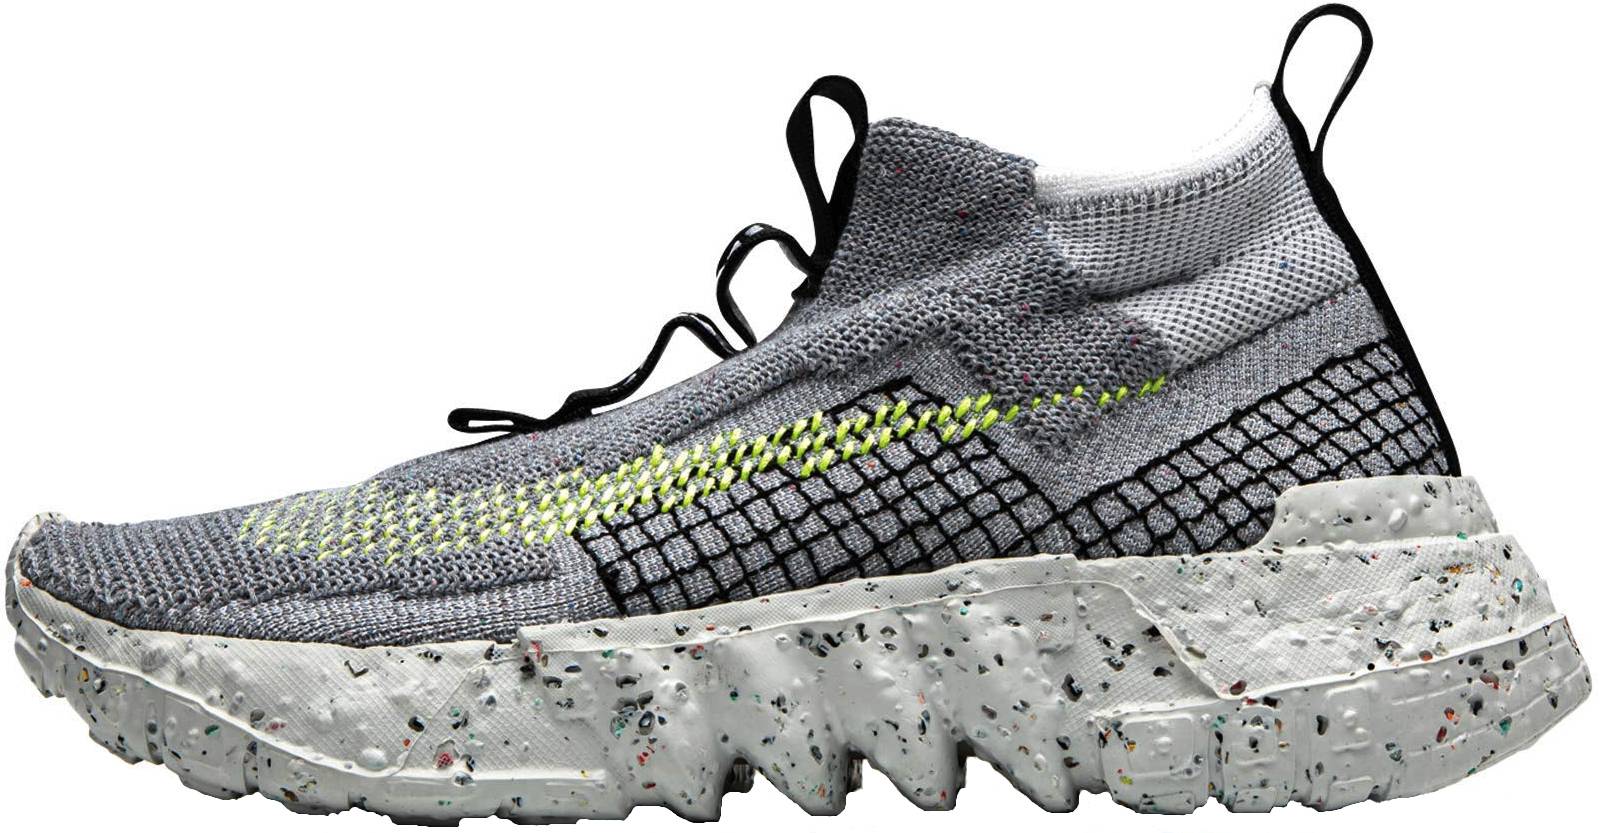 Nike Space Hippie 02 sneakers in grey | RunRepeat